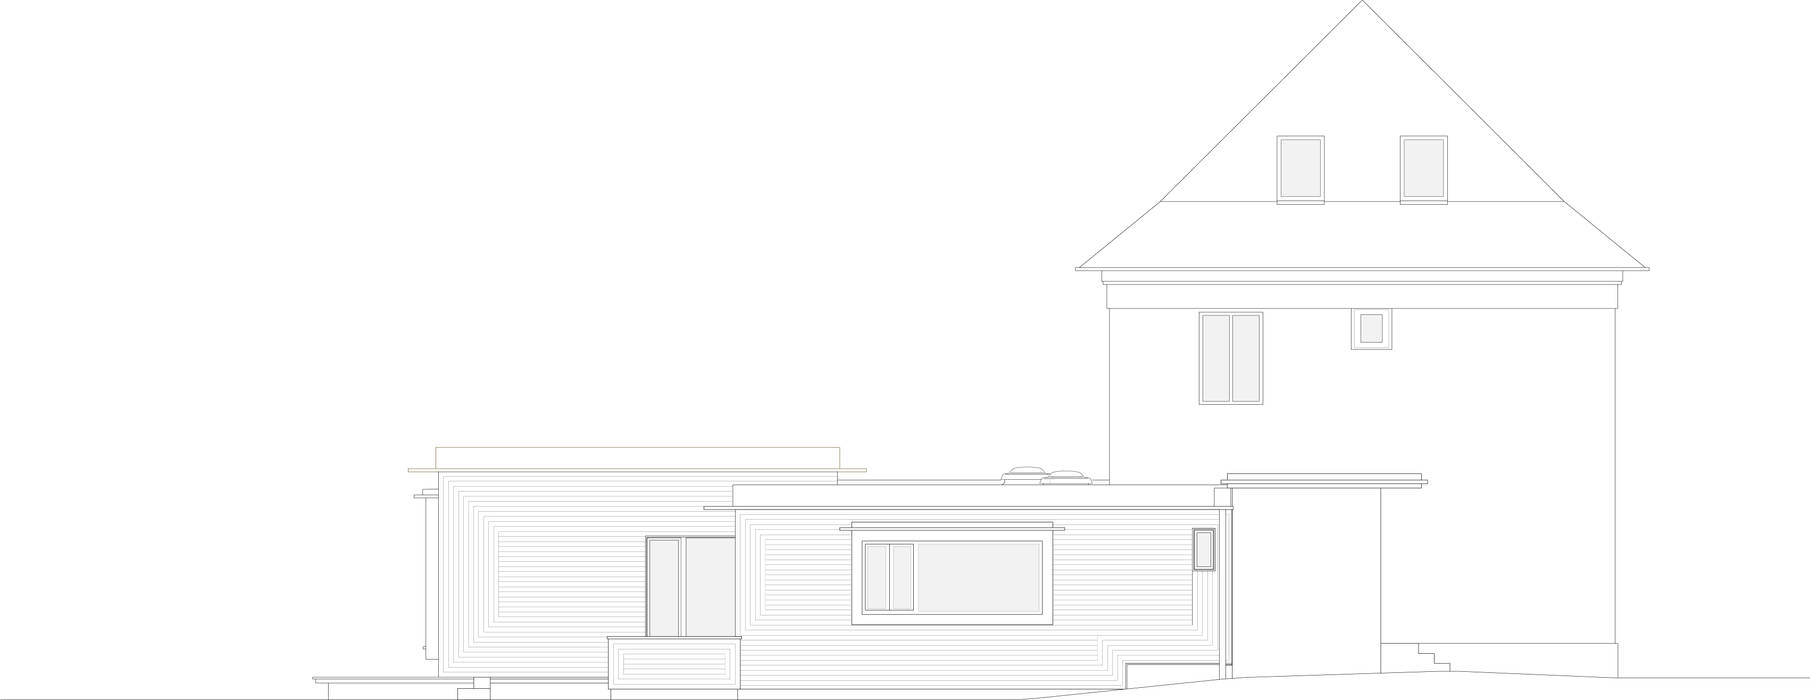 現代 by brandt+simon architekten, 現代風 semi-detached house,extension,Berlin,wooden house,wood facade